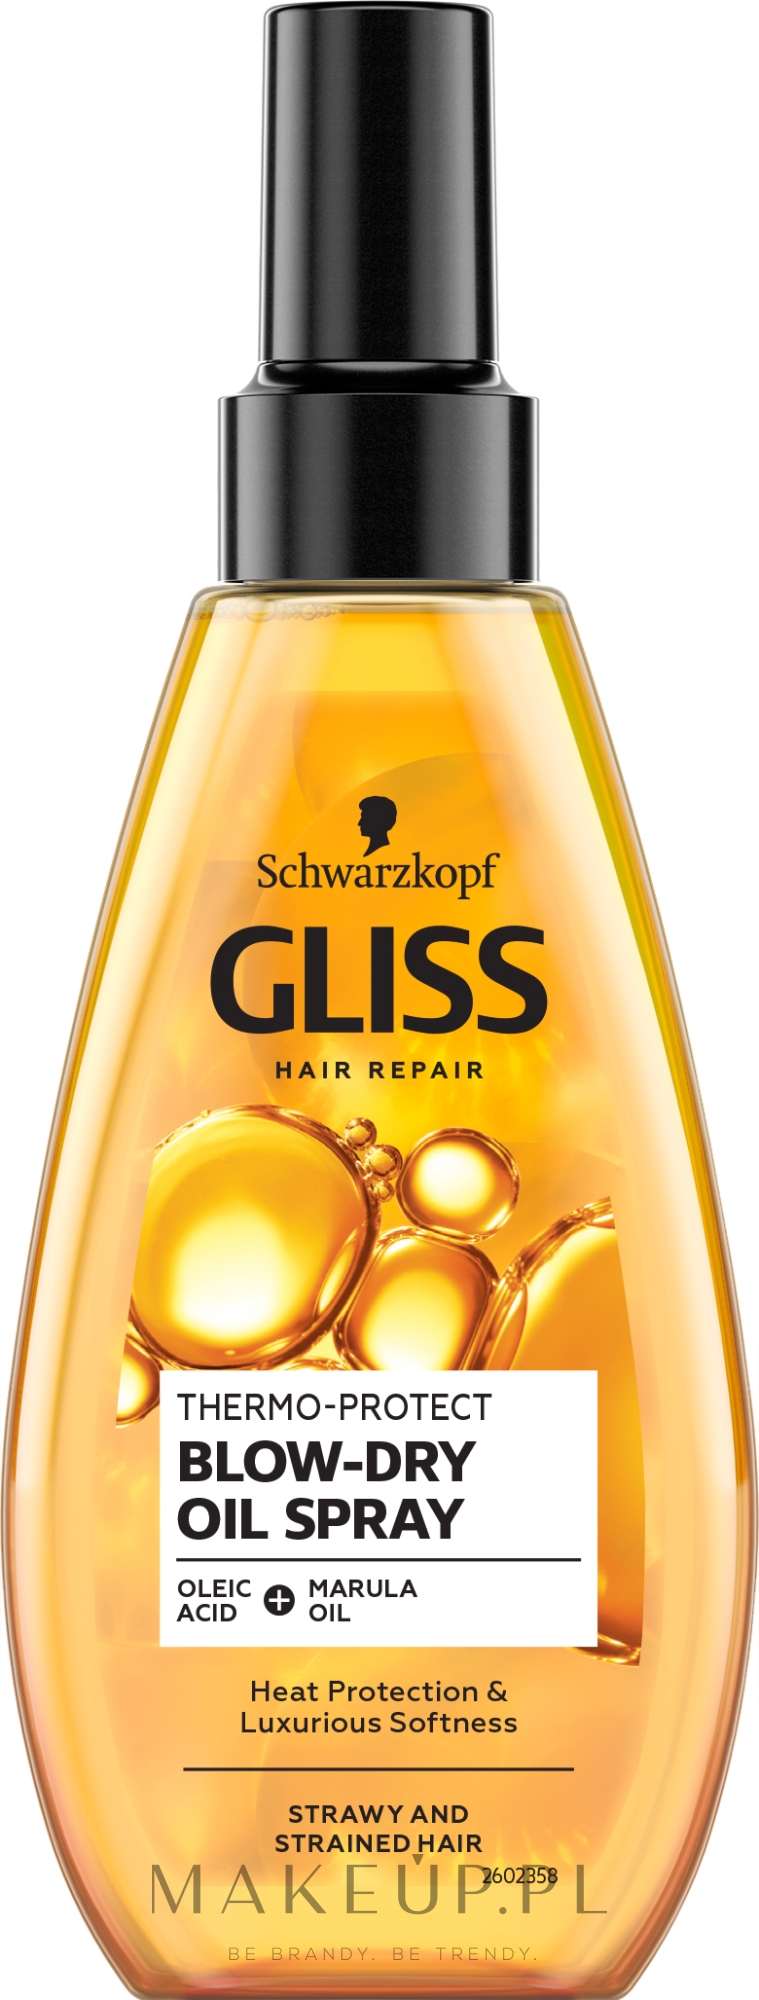 najlepszy szampon dla.golden retriver